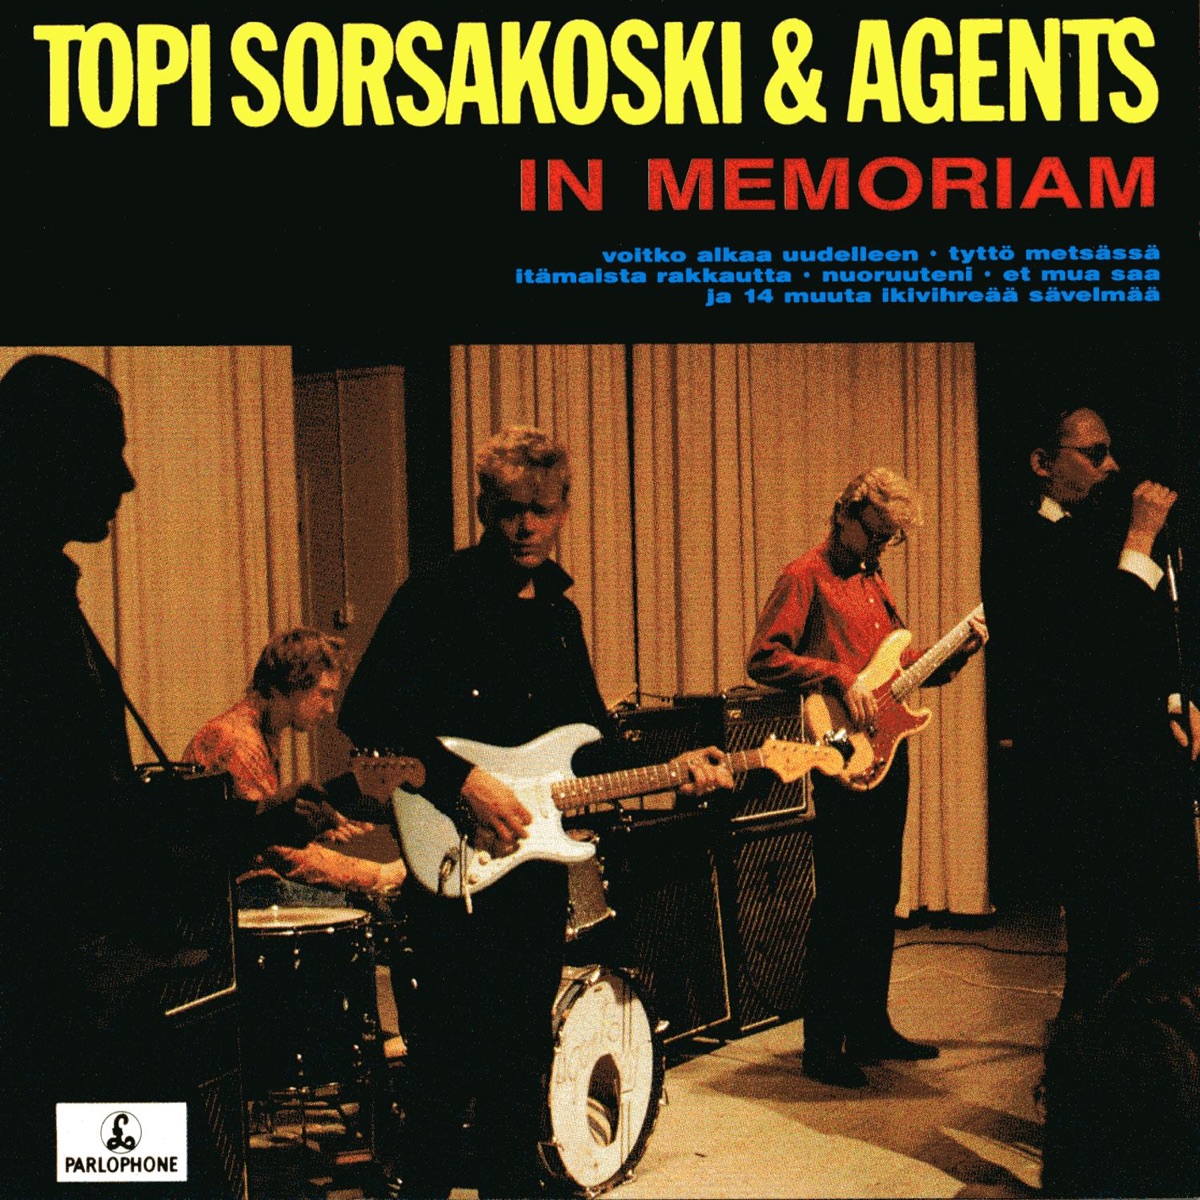 In Memoriam - Album by Topi Sorsakoski & Agents - Apple Music